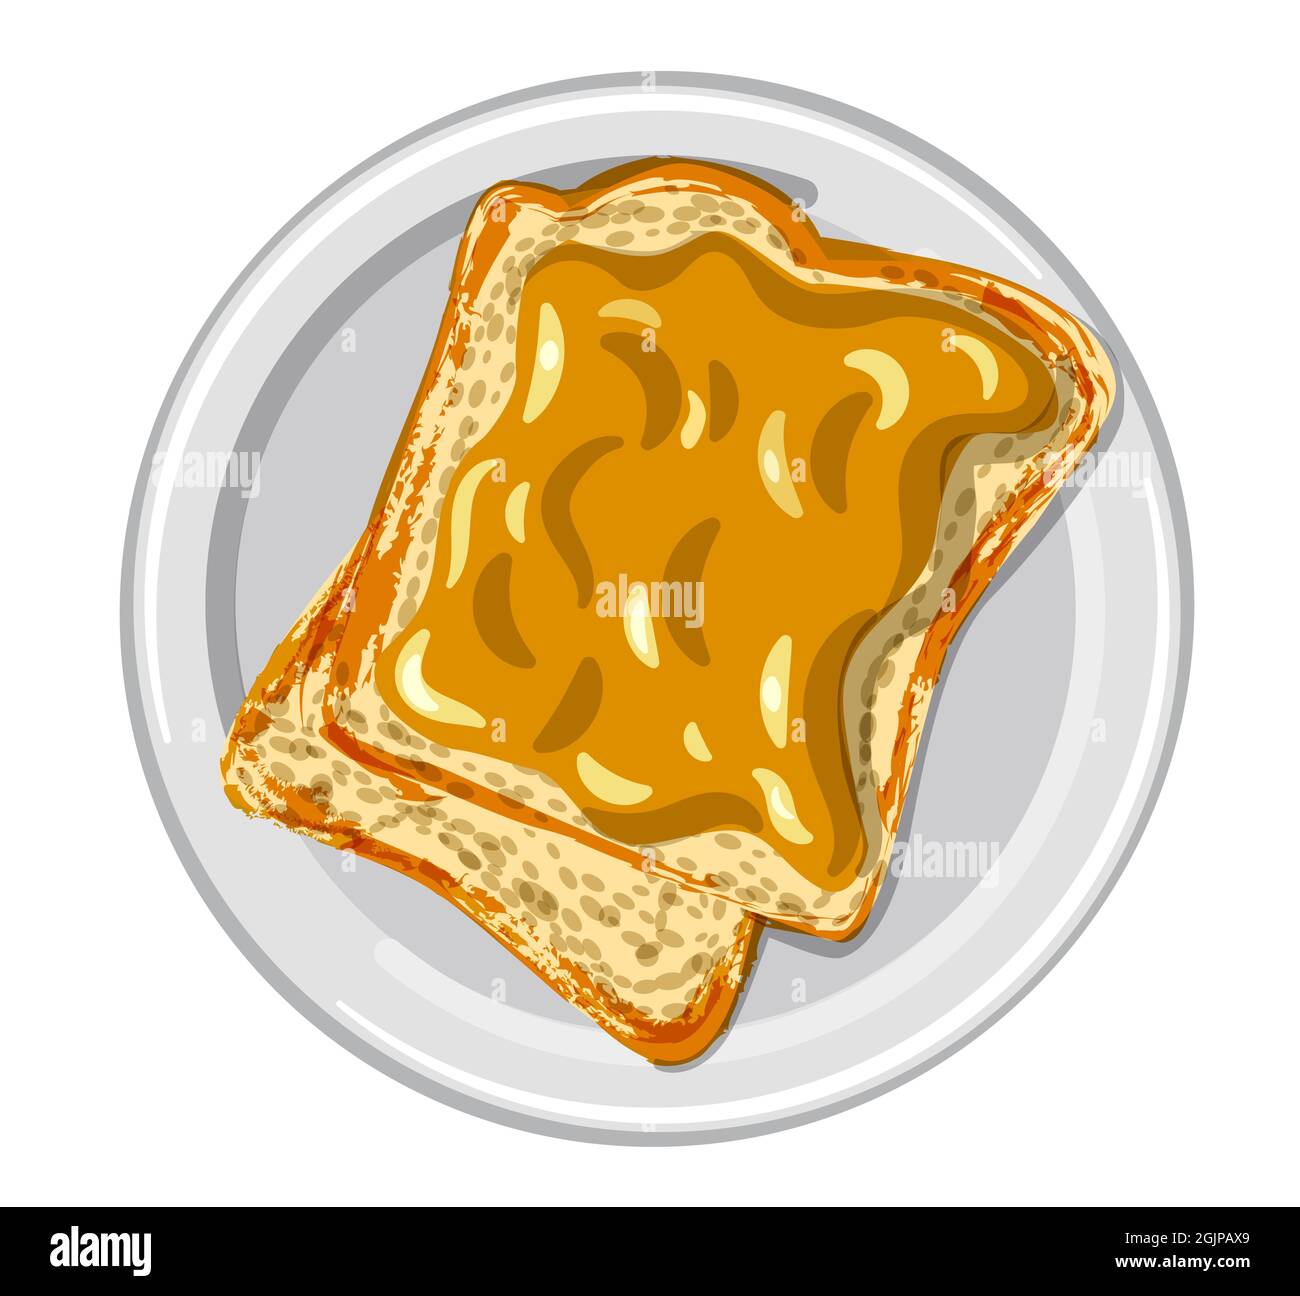 illustrazione dei sandwich con burro di arachidi su un piatto Illustrazione Vettoriale